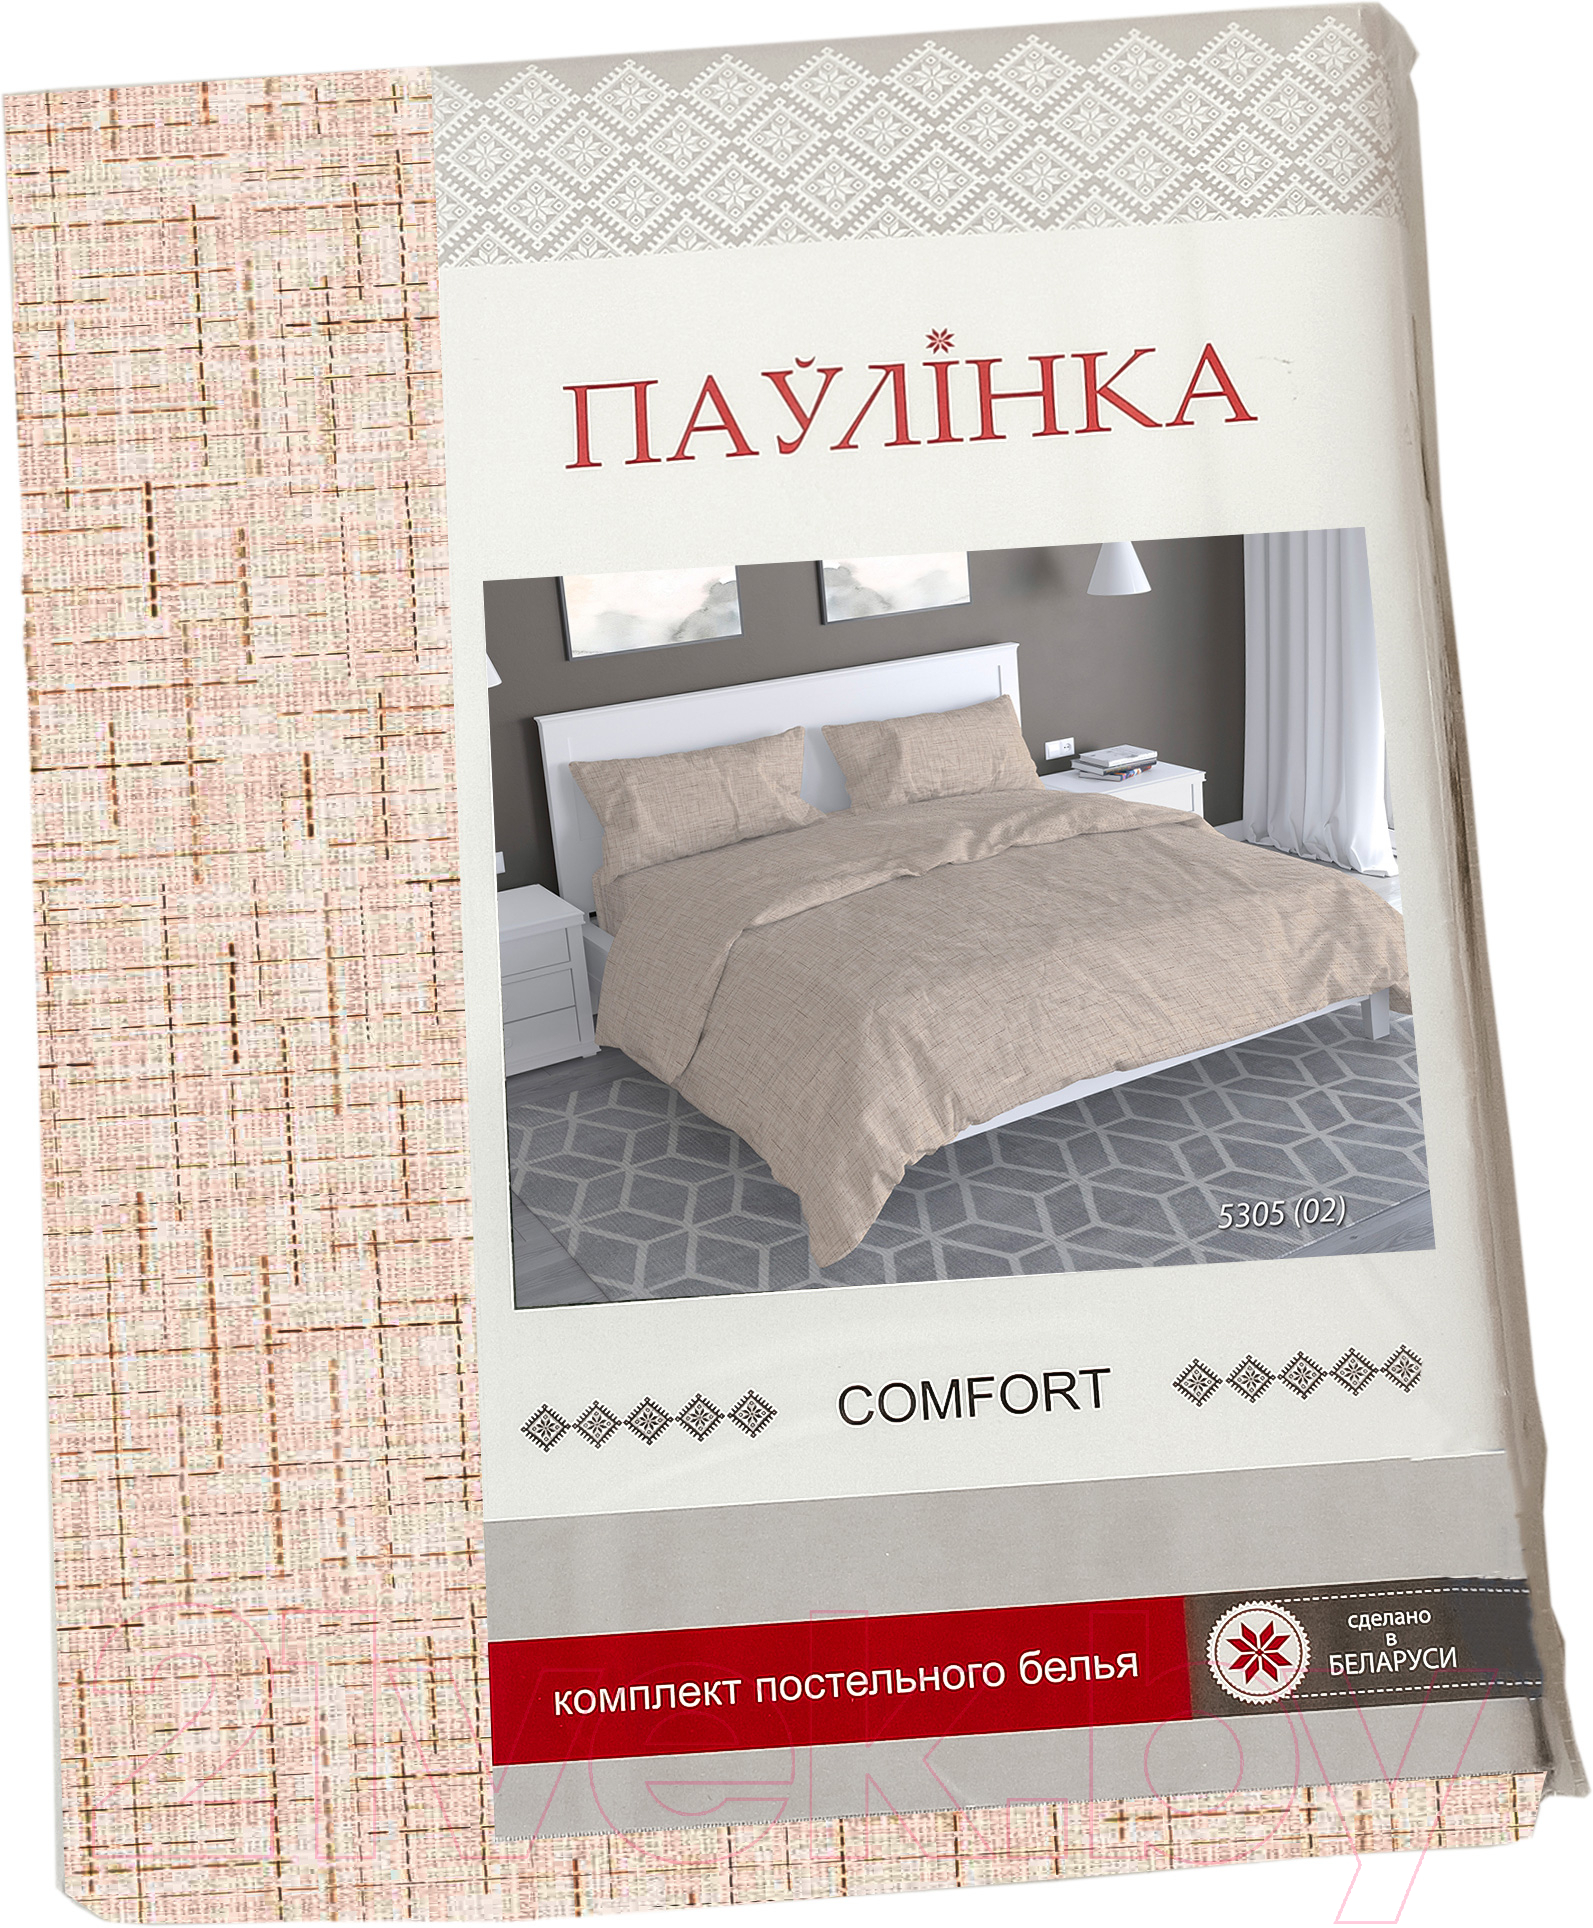 Комплект постельного белья Паулiнка Comfort 4744 / 530502